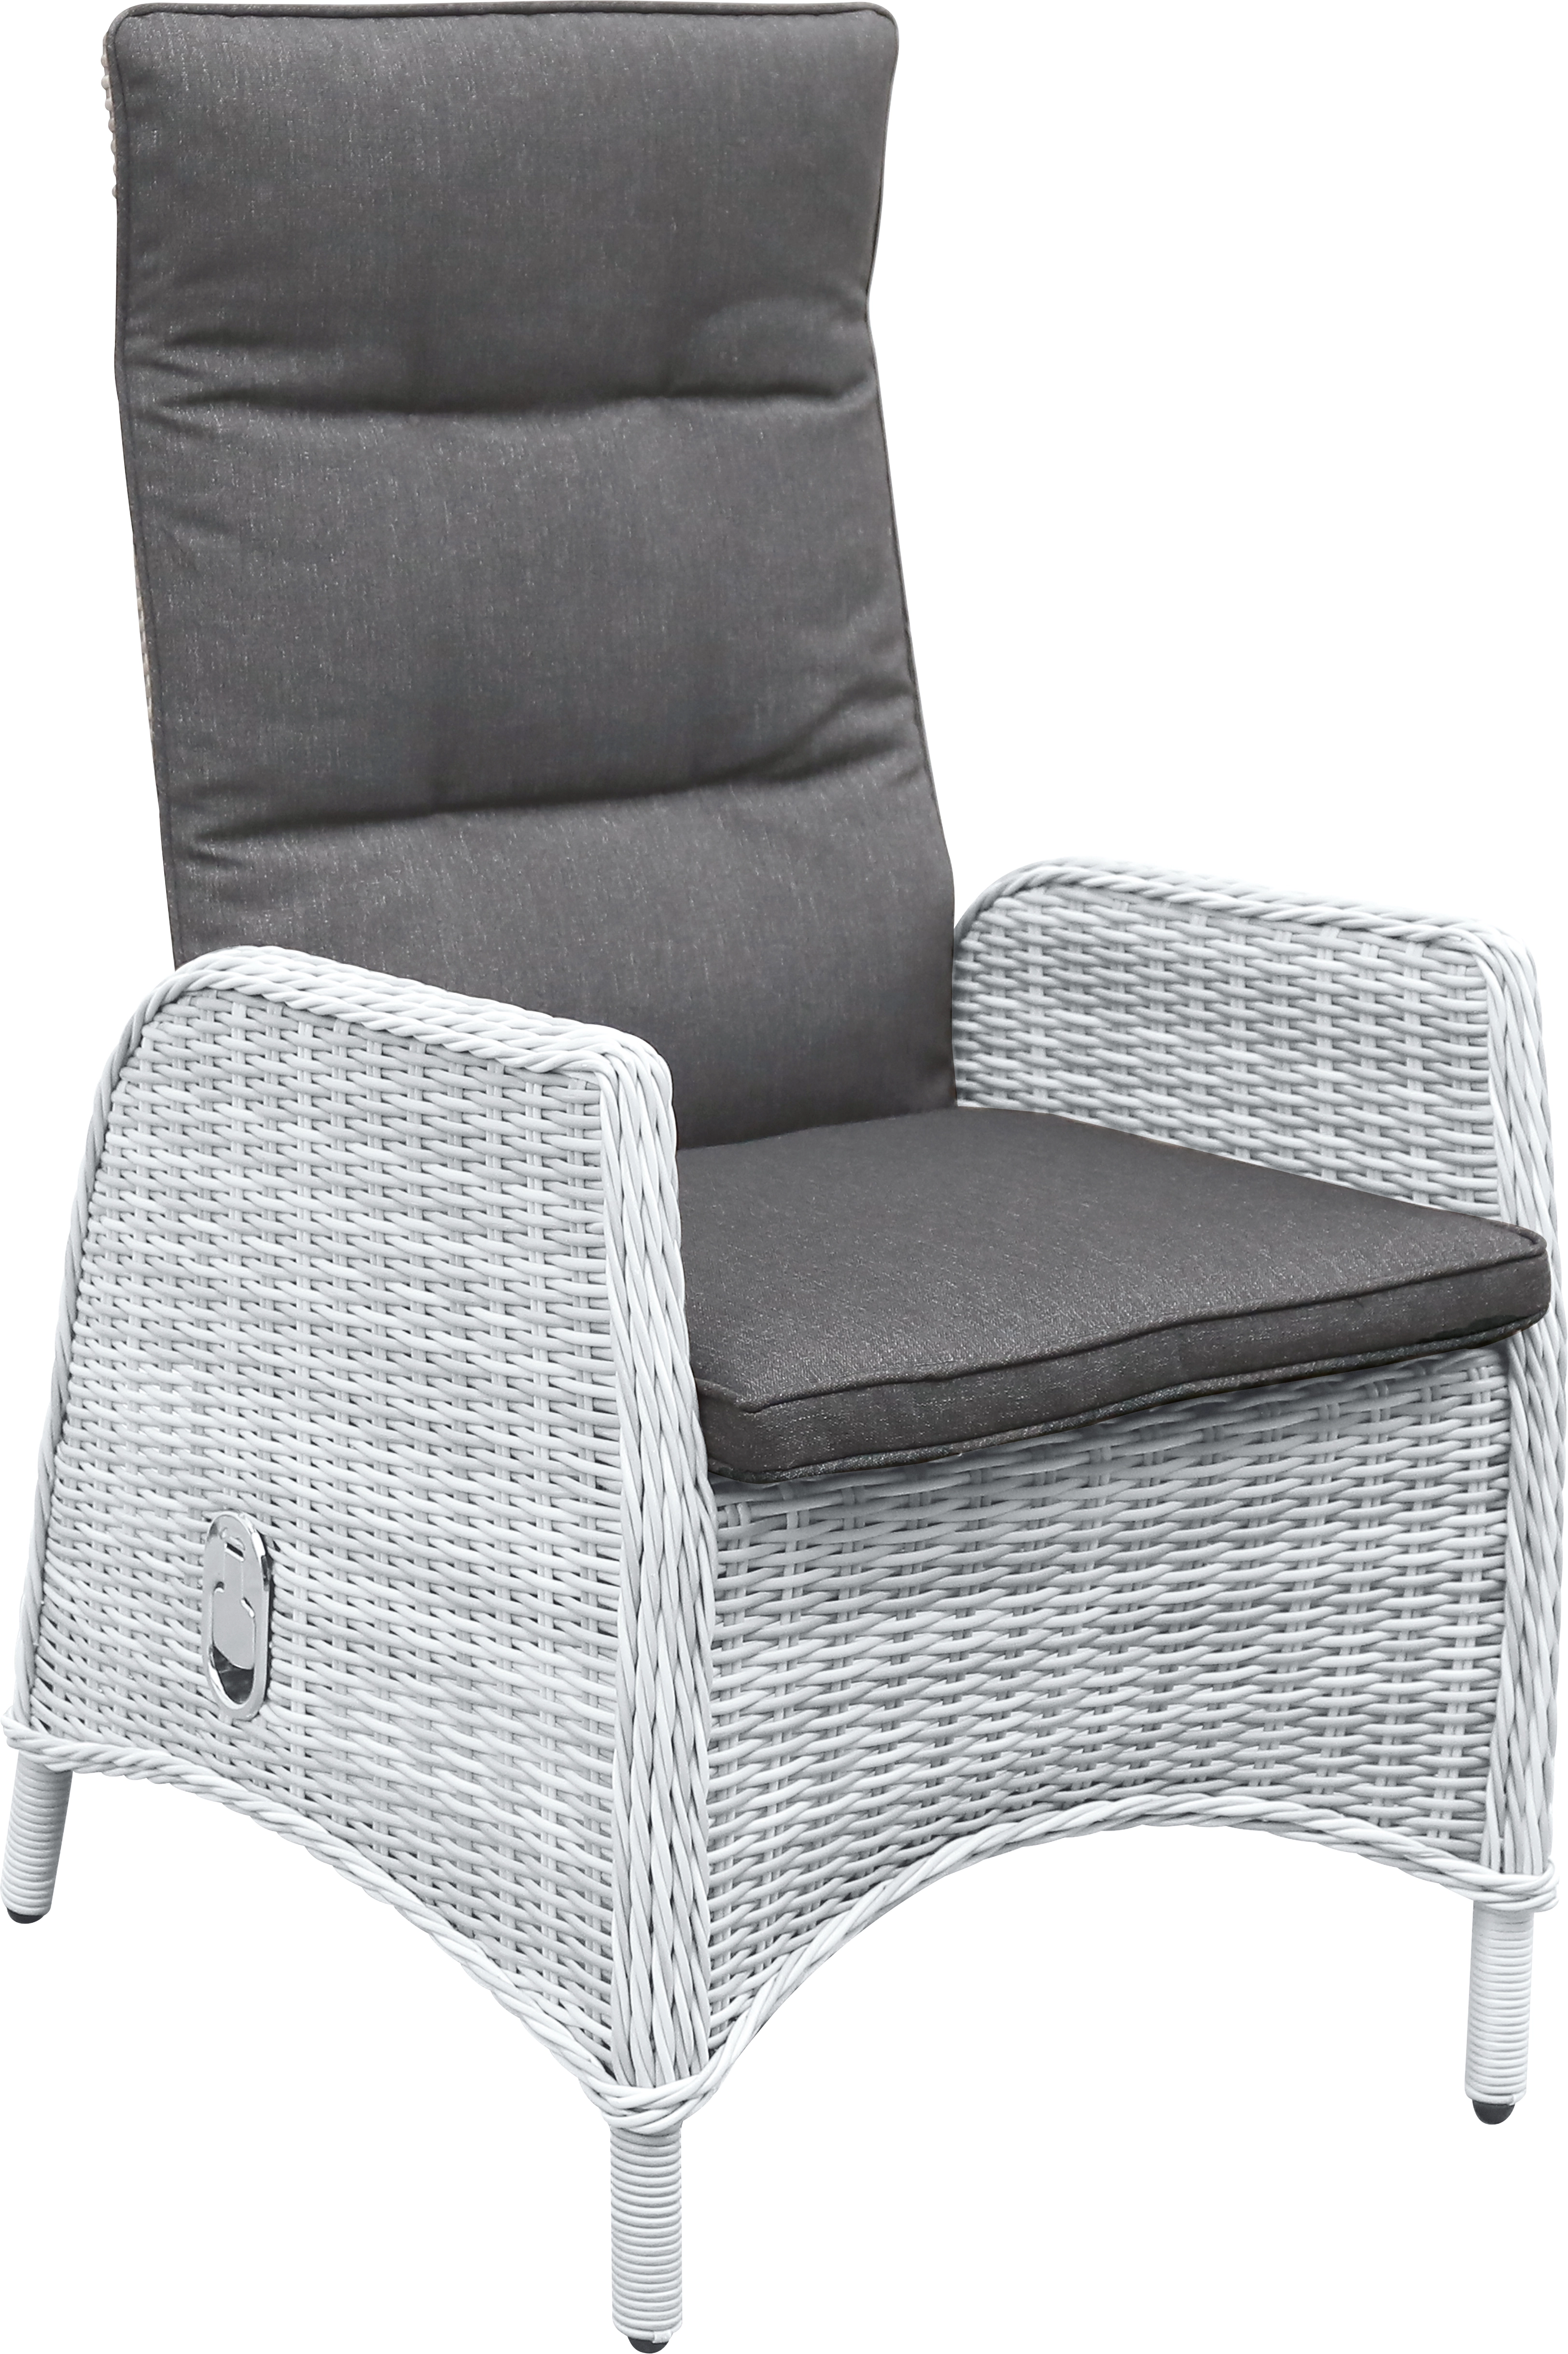 Ersatz-) Sitz-/Rückenkissen für Dedin Lounge-Stuhl Grau kaufen bei OBI